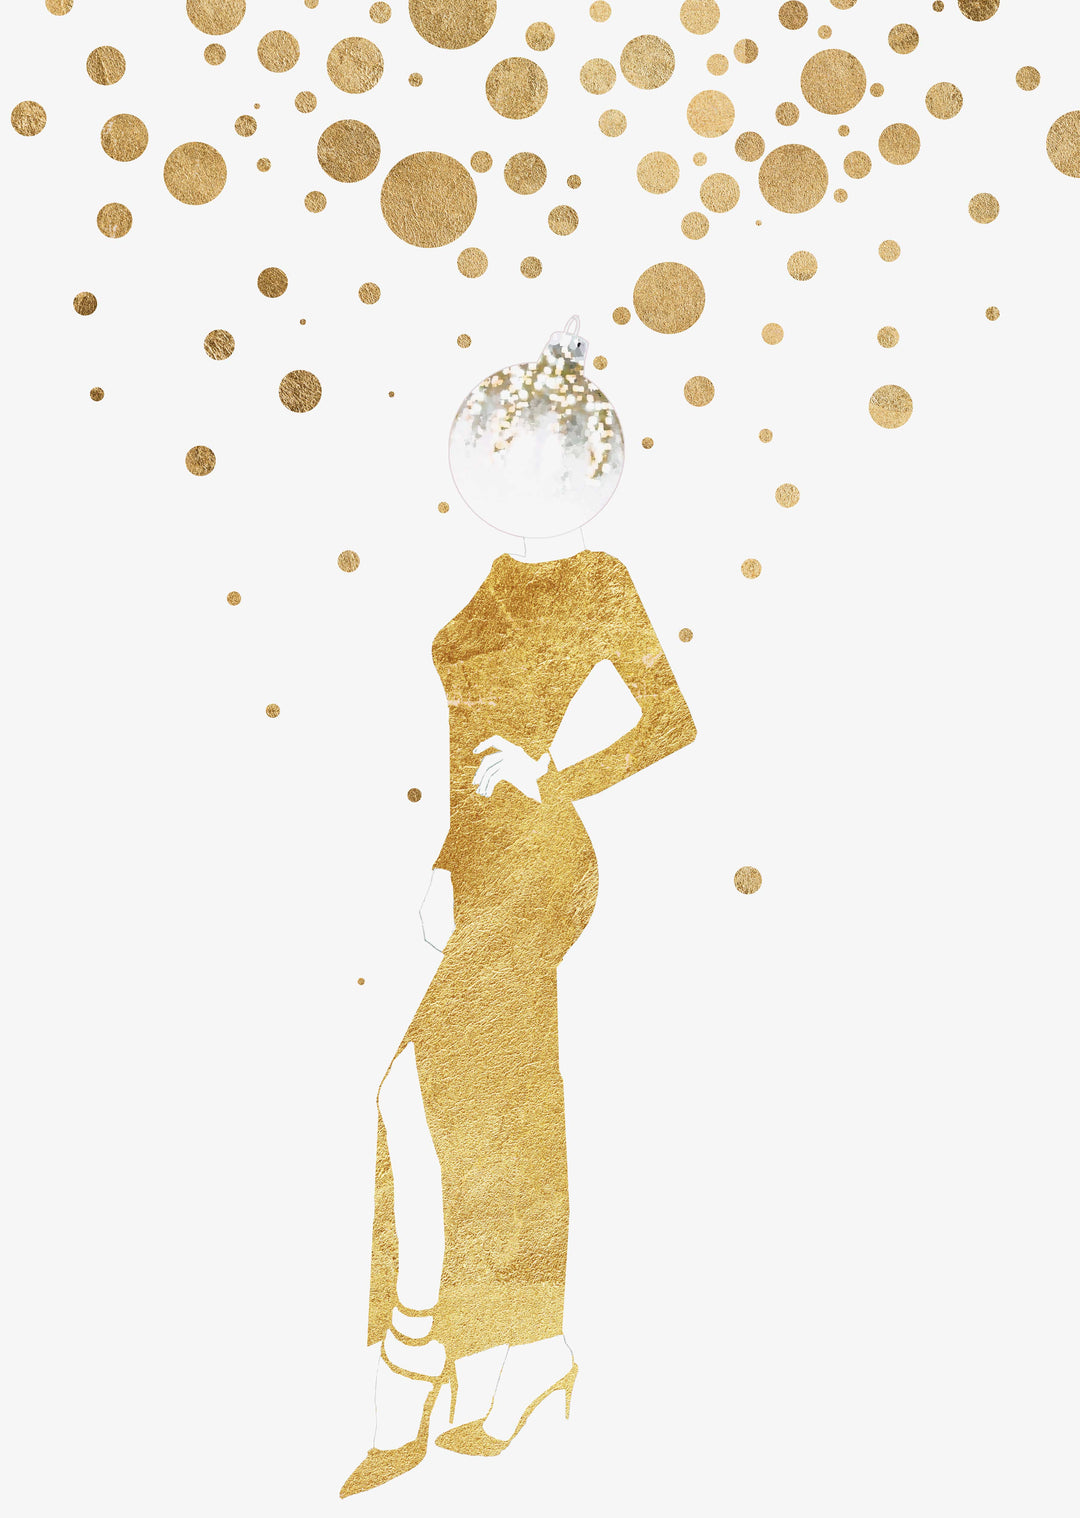 Festlicher Mode-Illustrations-Wand-Kunstdruck, goldener Kugelkopf, moderne und stilvolle Weihnachtsdekoration, alternative Weihnachtsdekoration